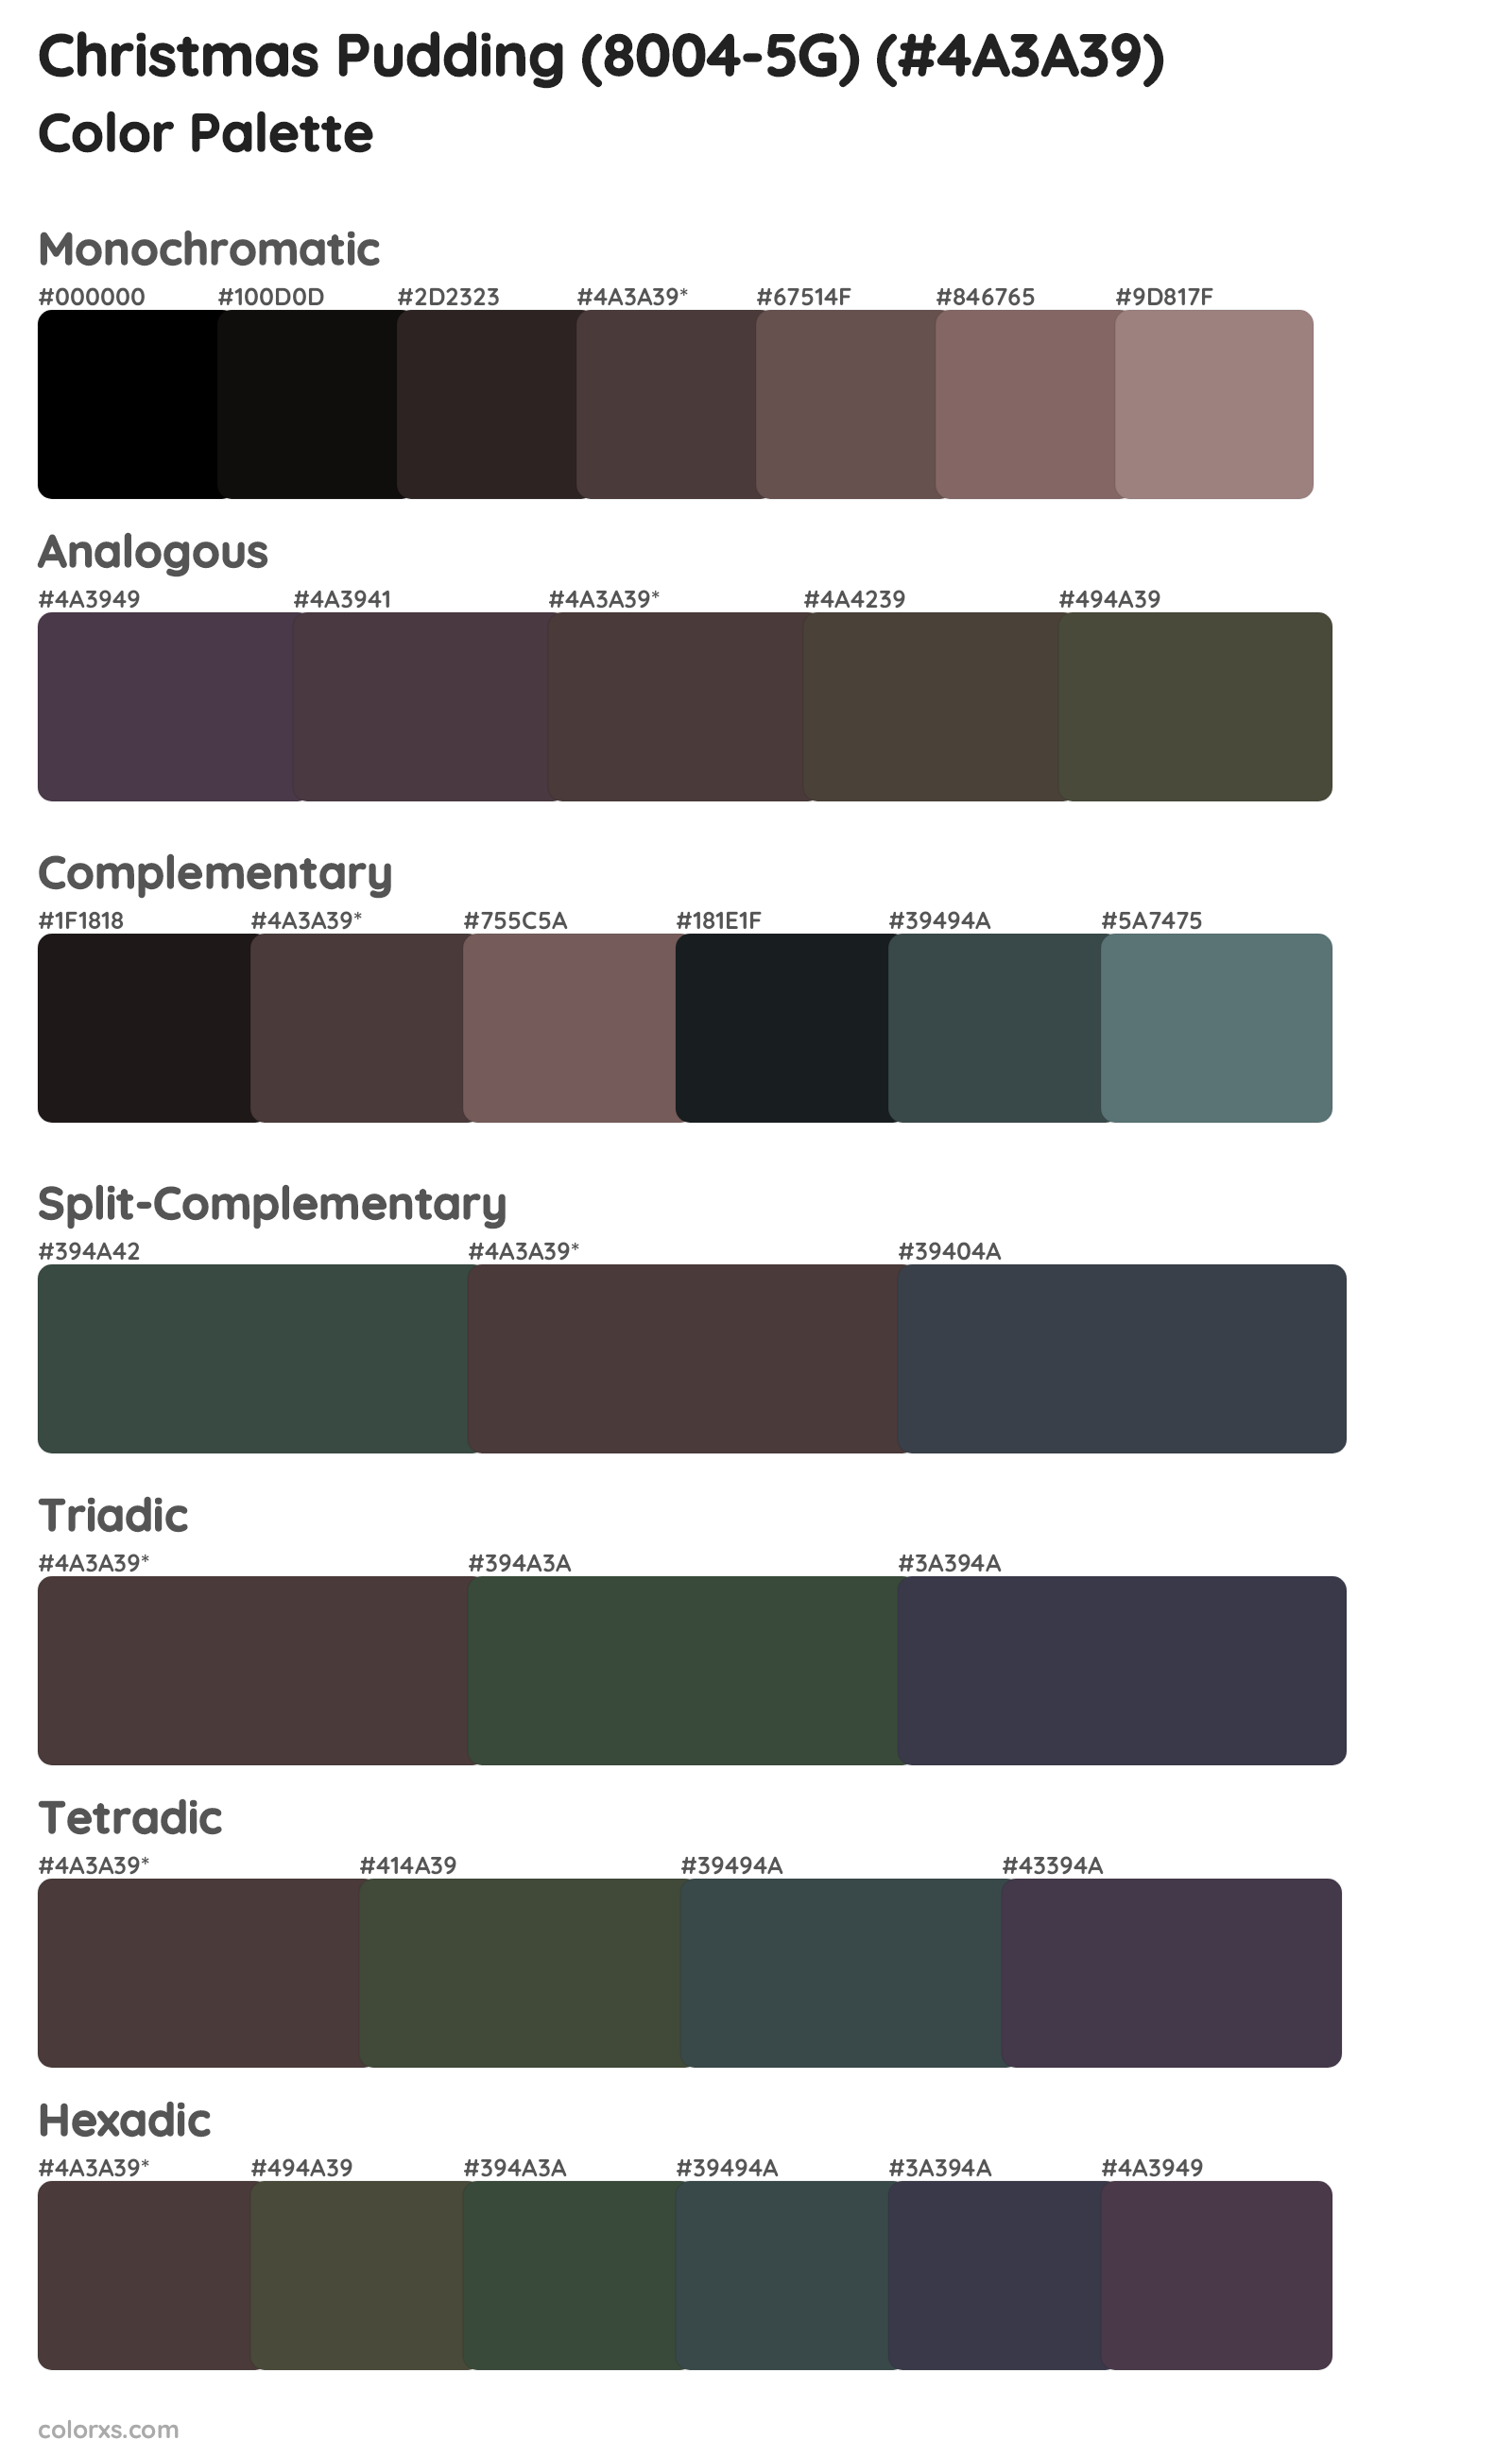 Christmas Pudding (8004-5G) Color Scheme Palettes